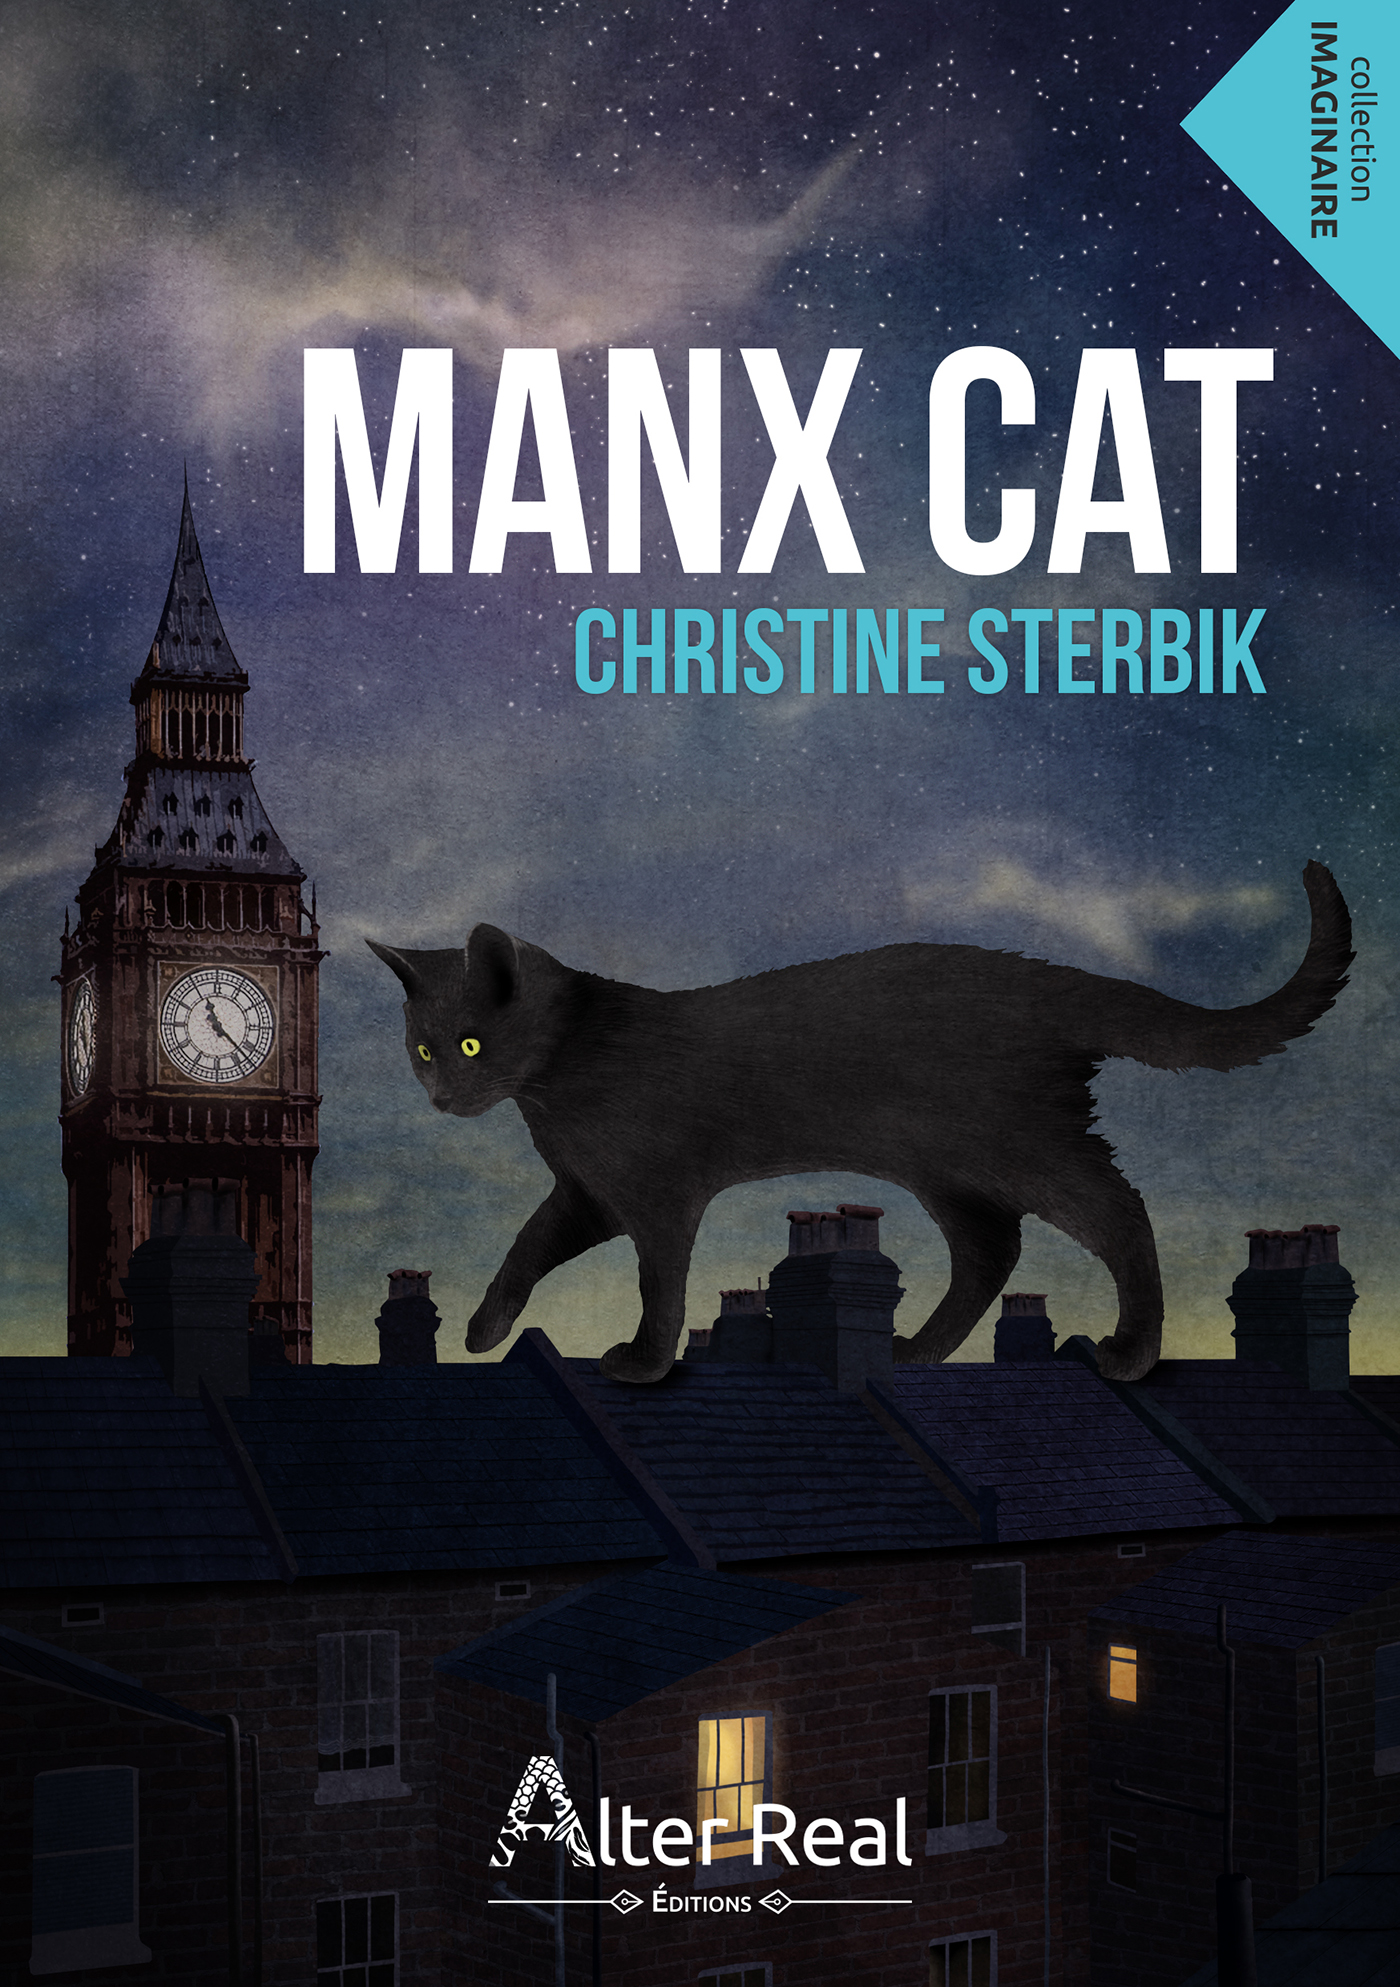 Afficher "Manx cat"